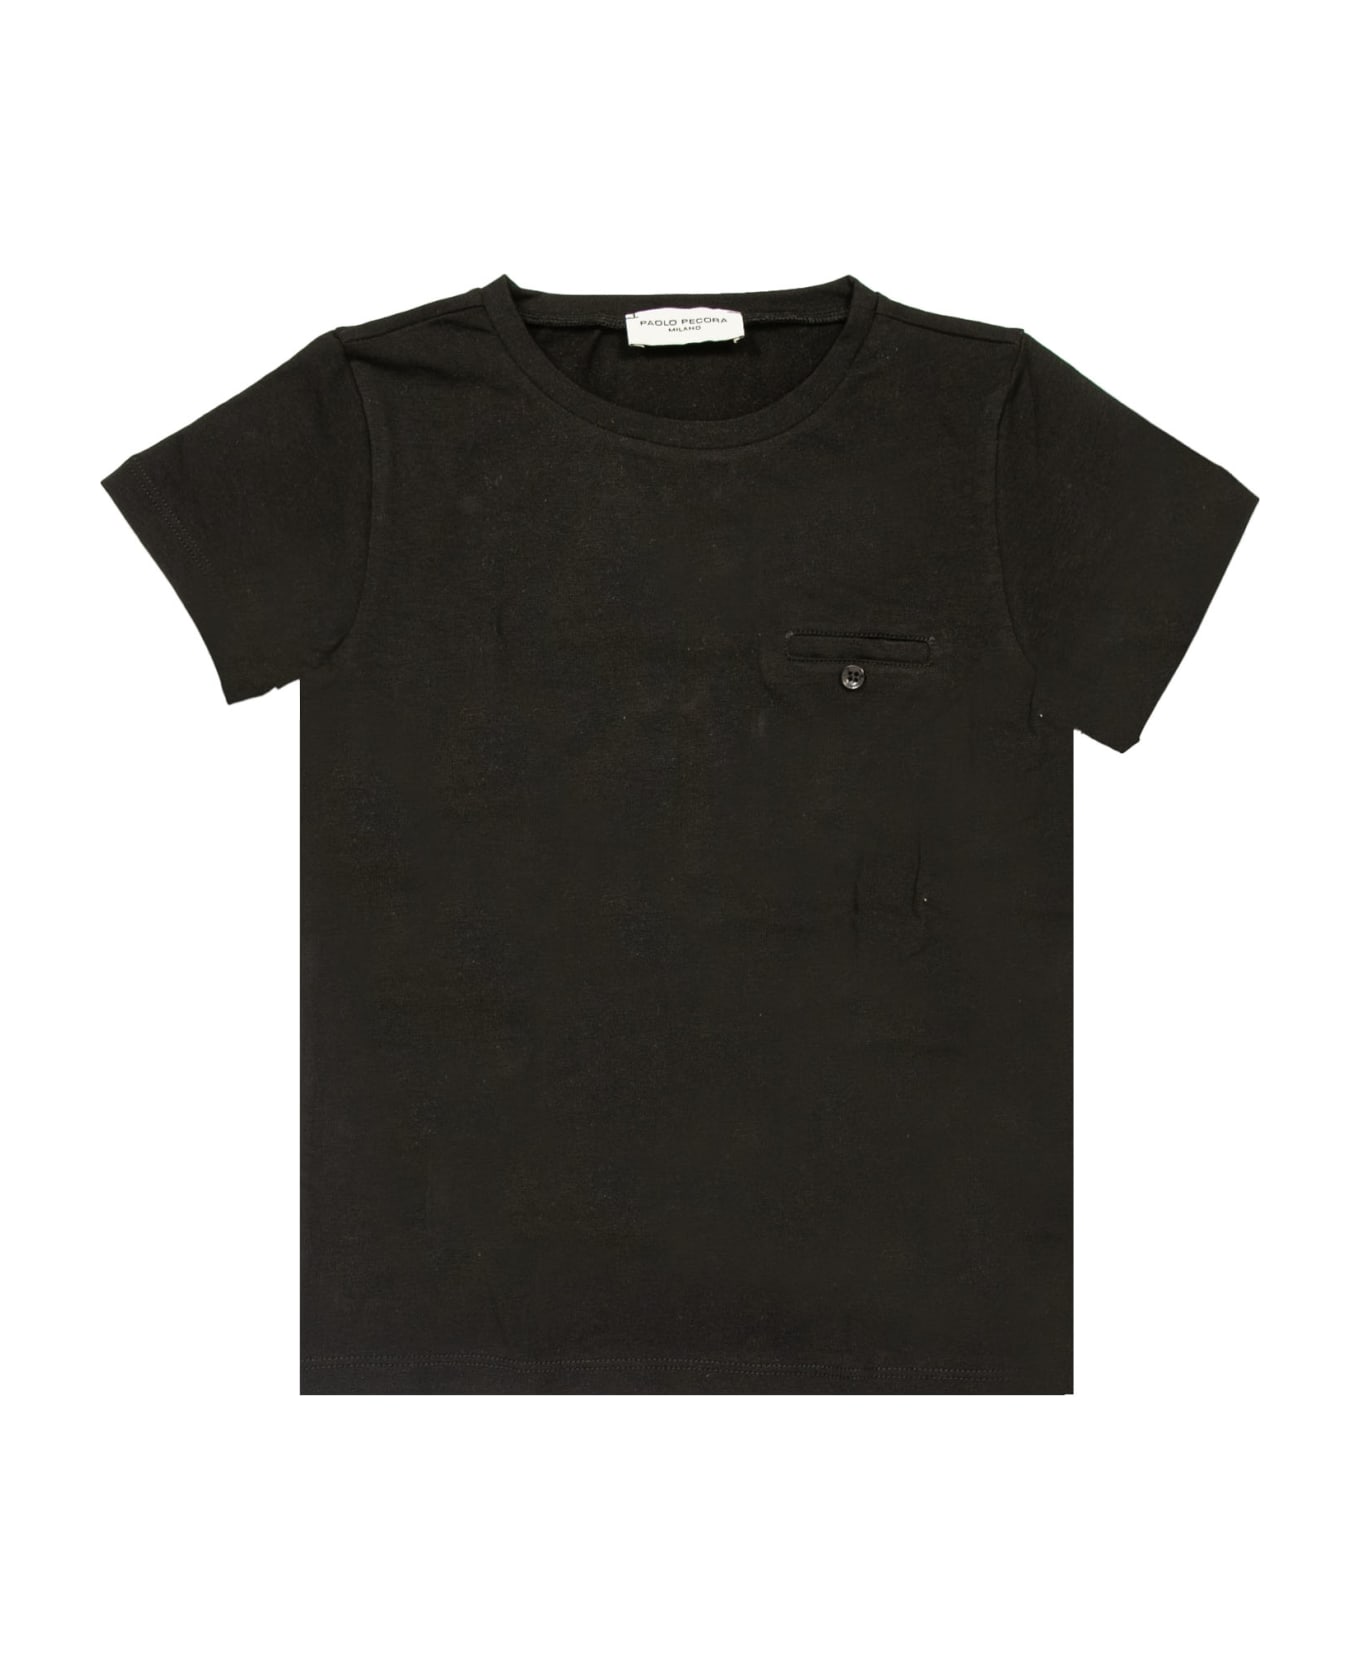 Paolo Pecora Cotton T-shirt - Back